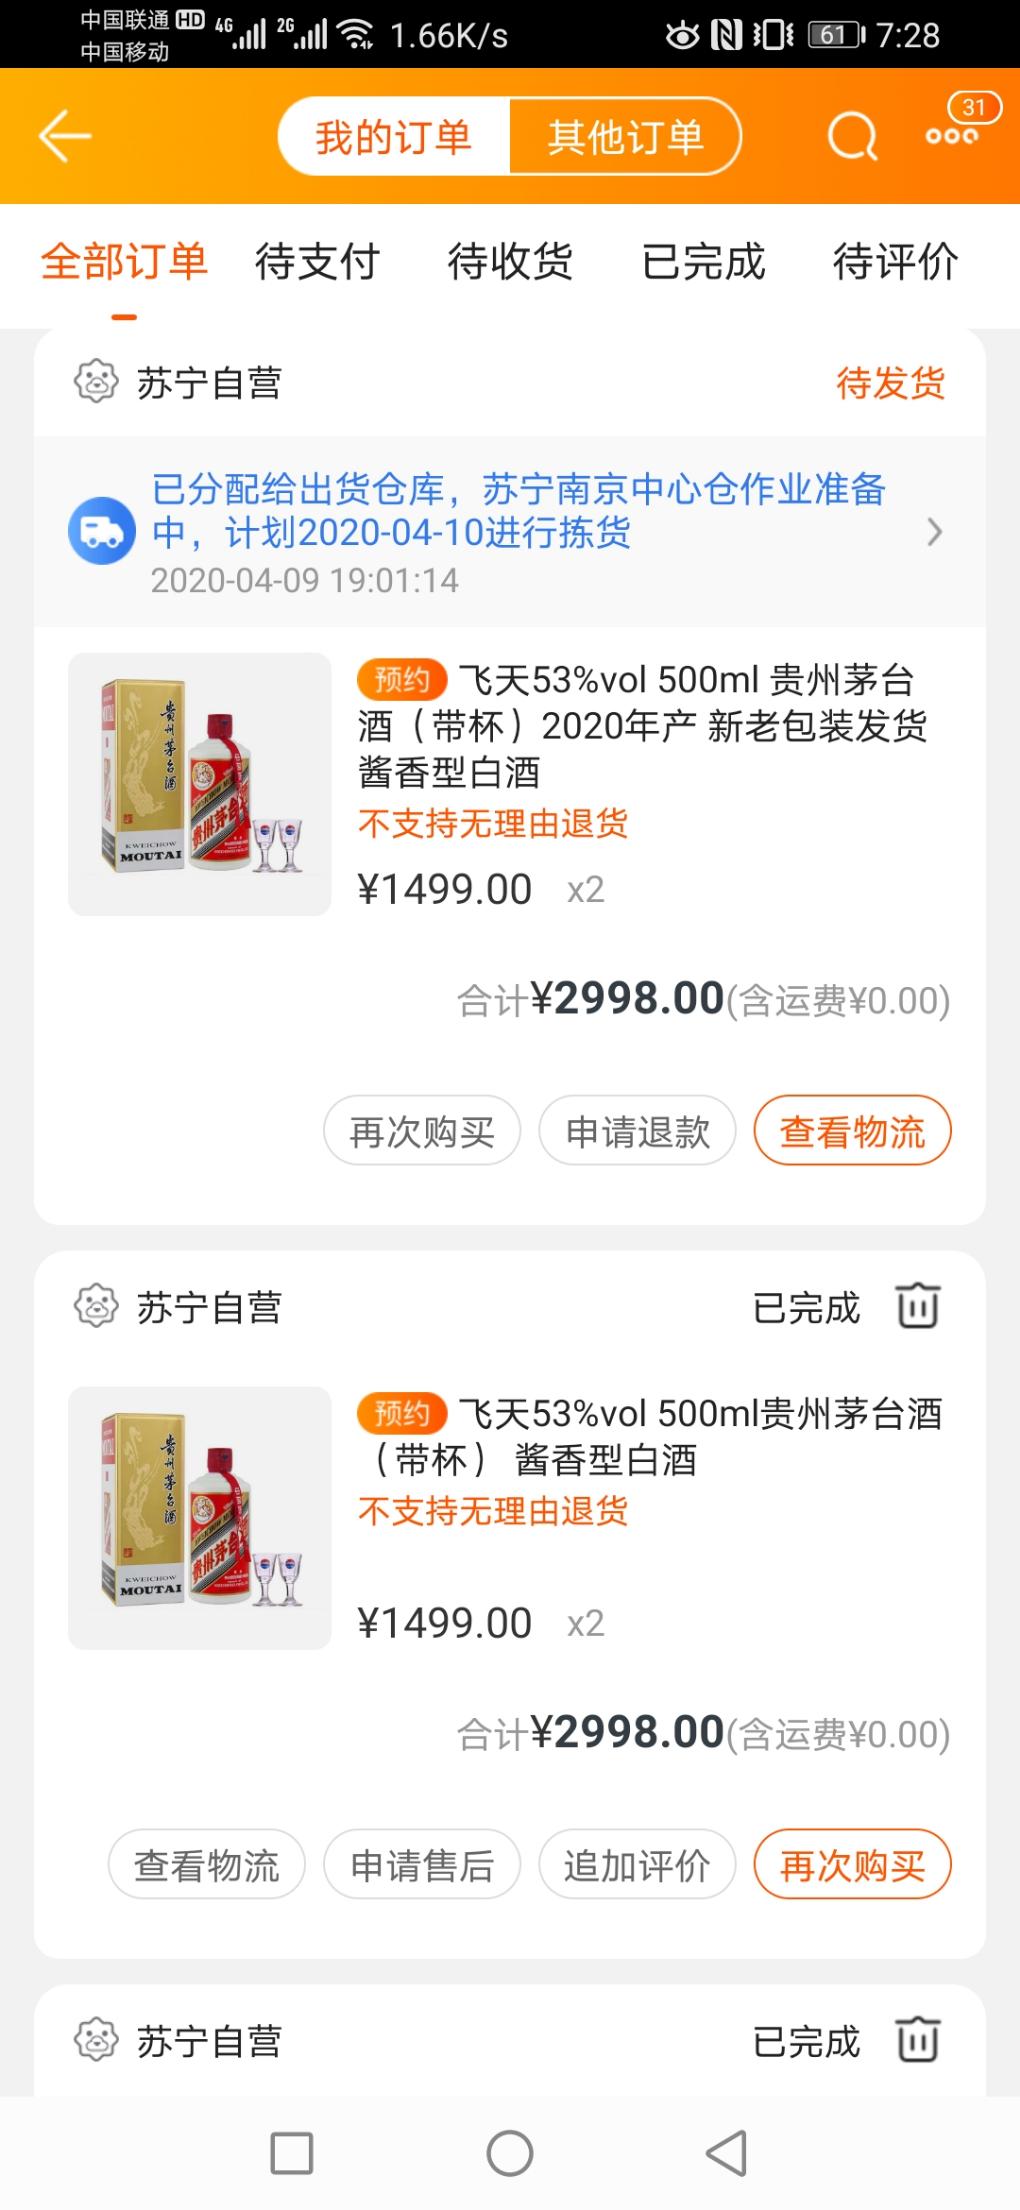 感谢苏宁-消费了100 块-不到两个月抢到4瓶飞天-惠小助(52huixz.com)